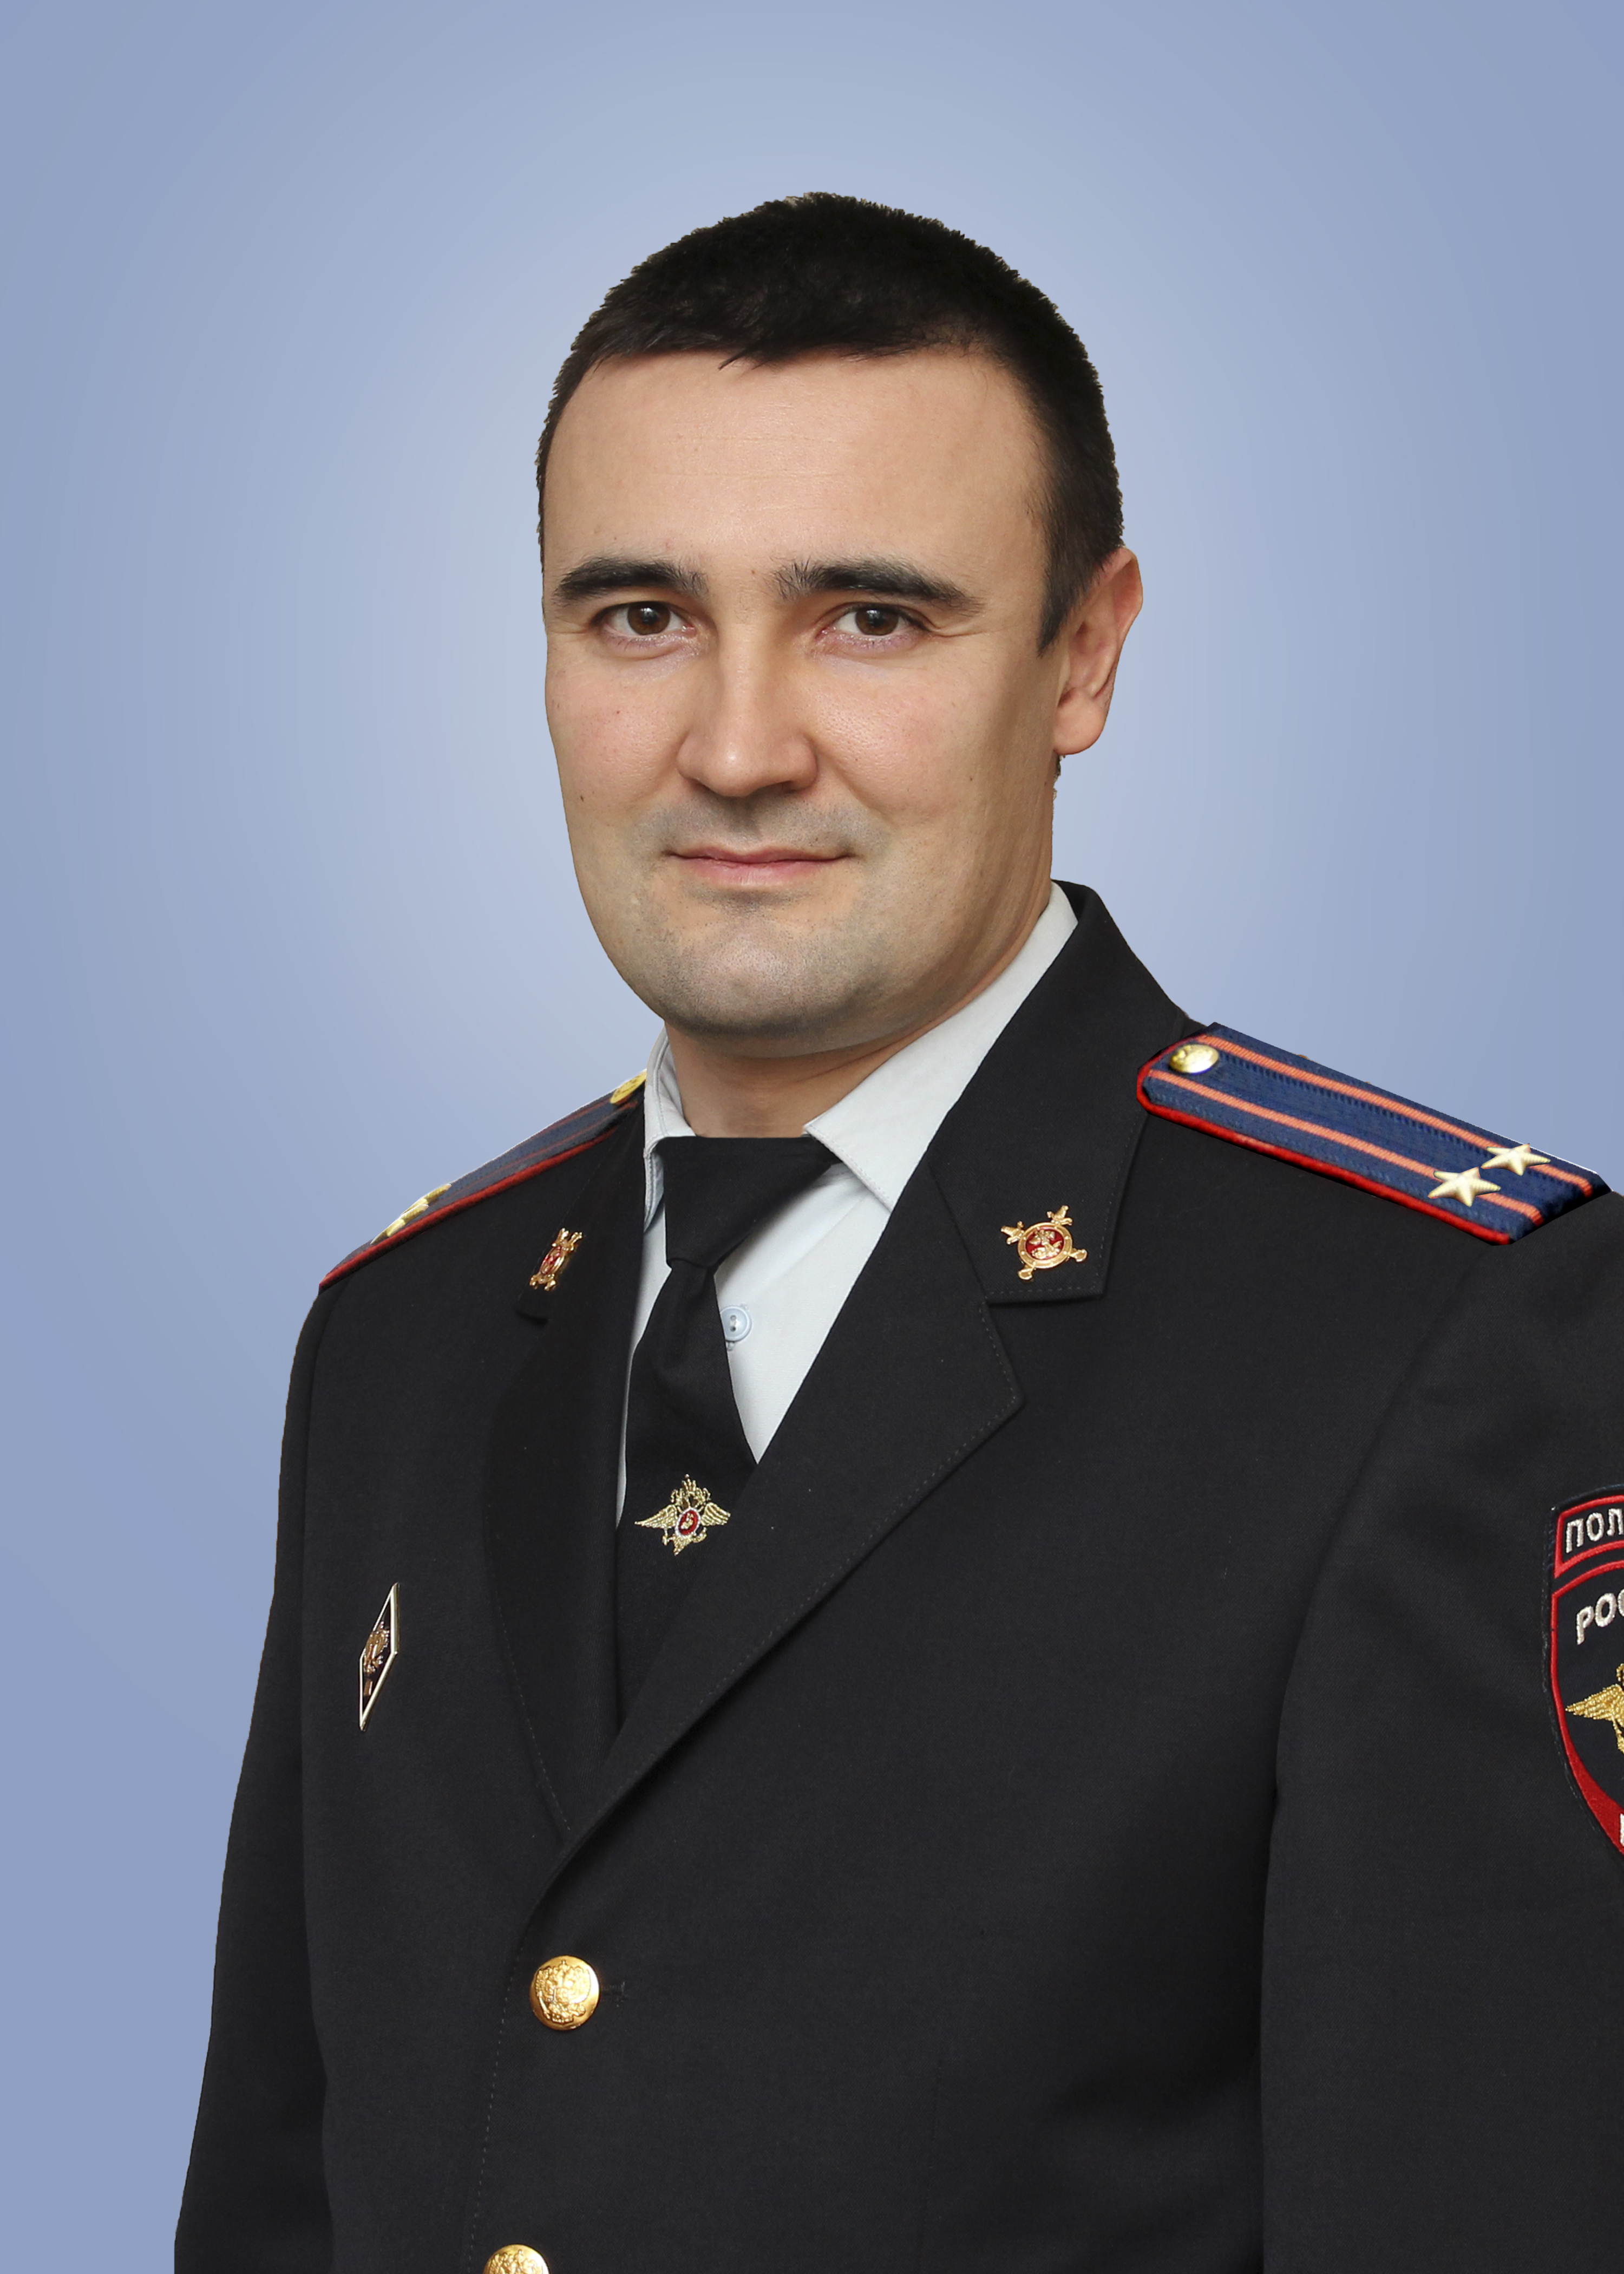                         Babichev Arseniy
            